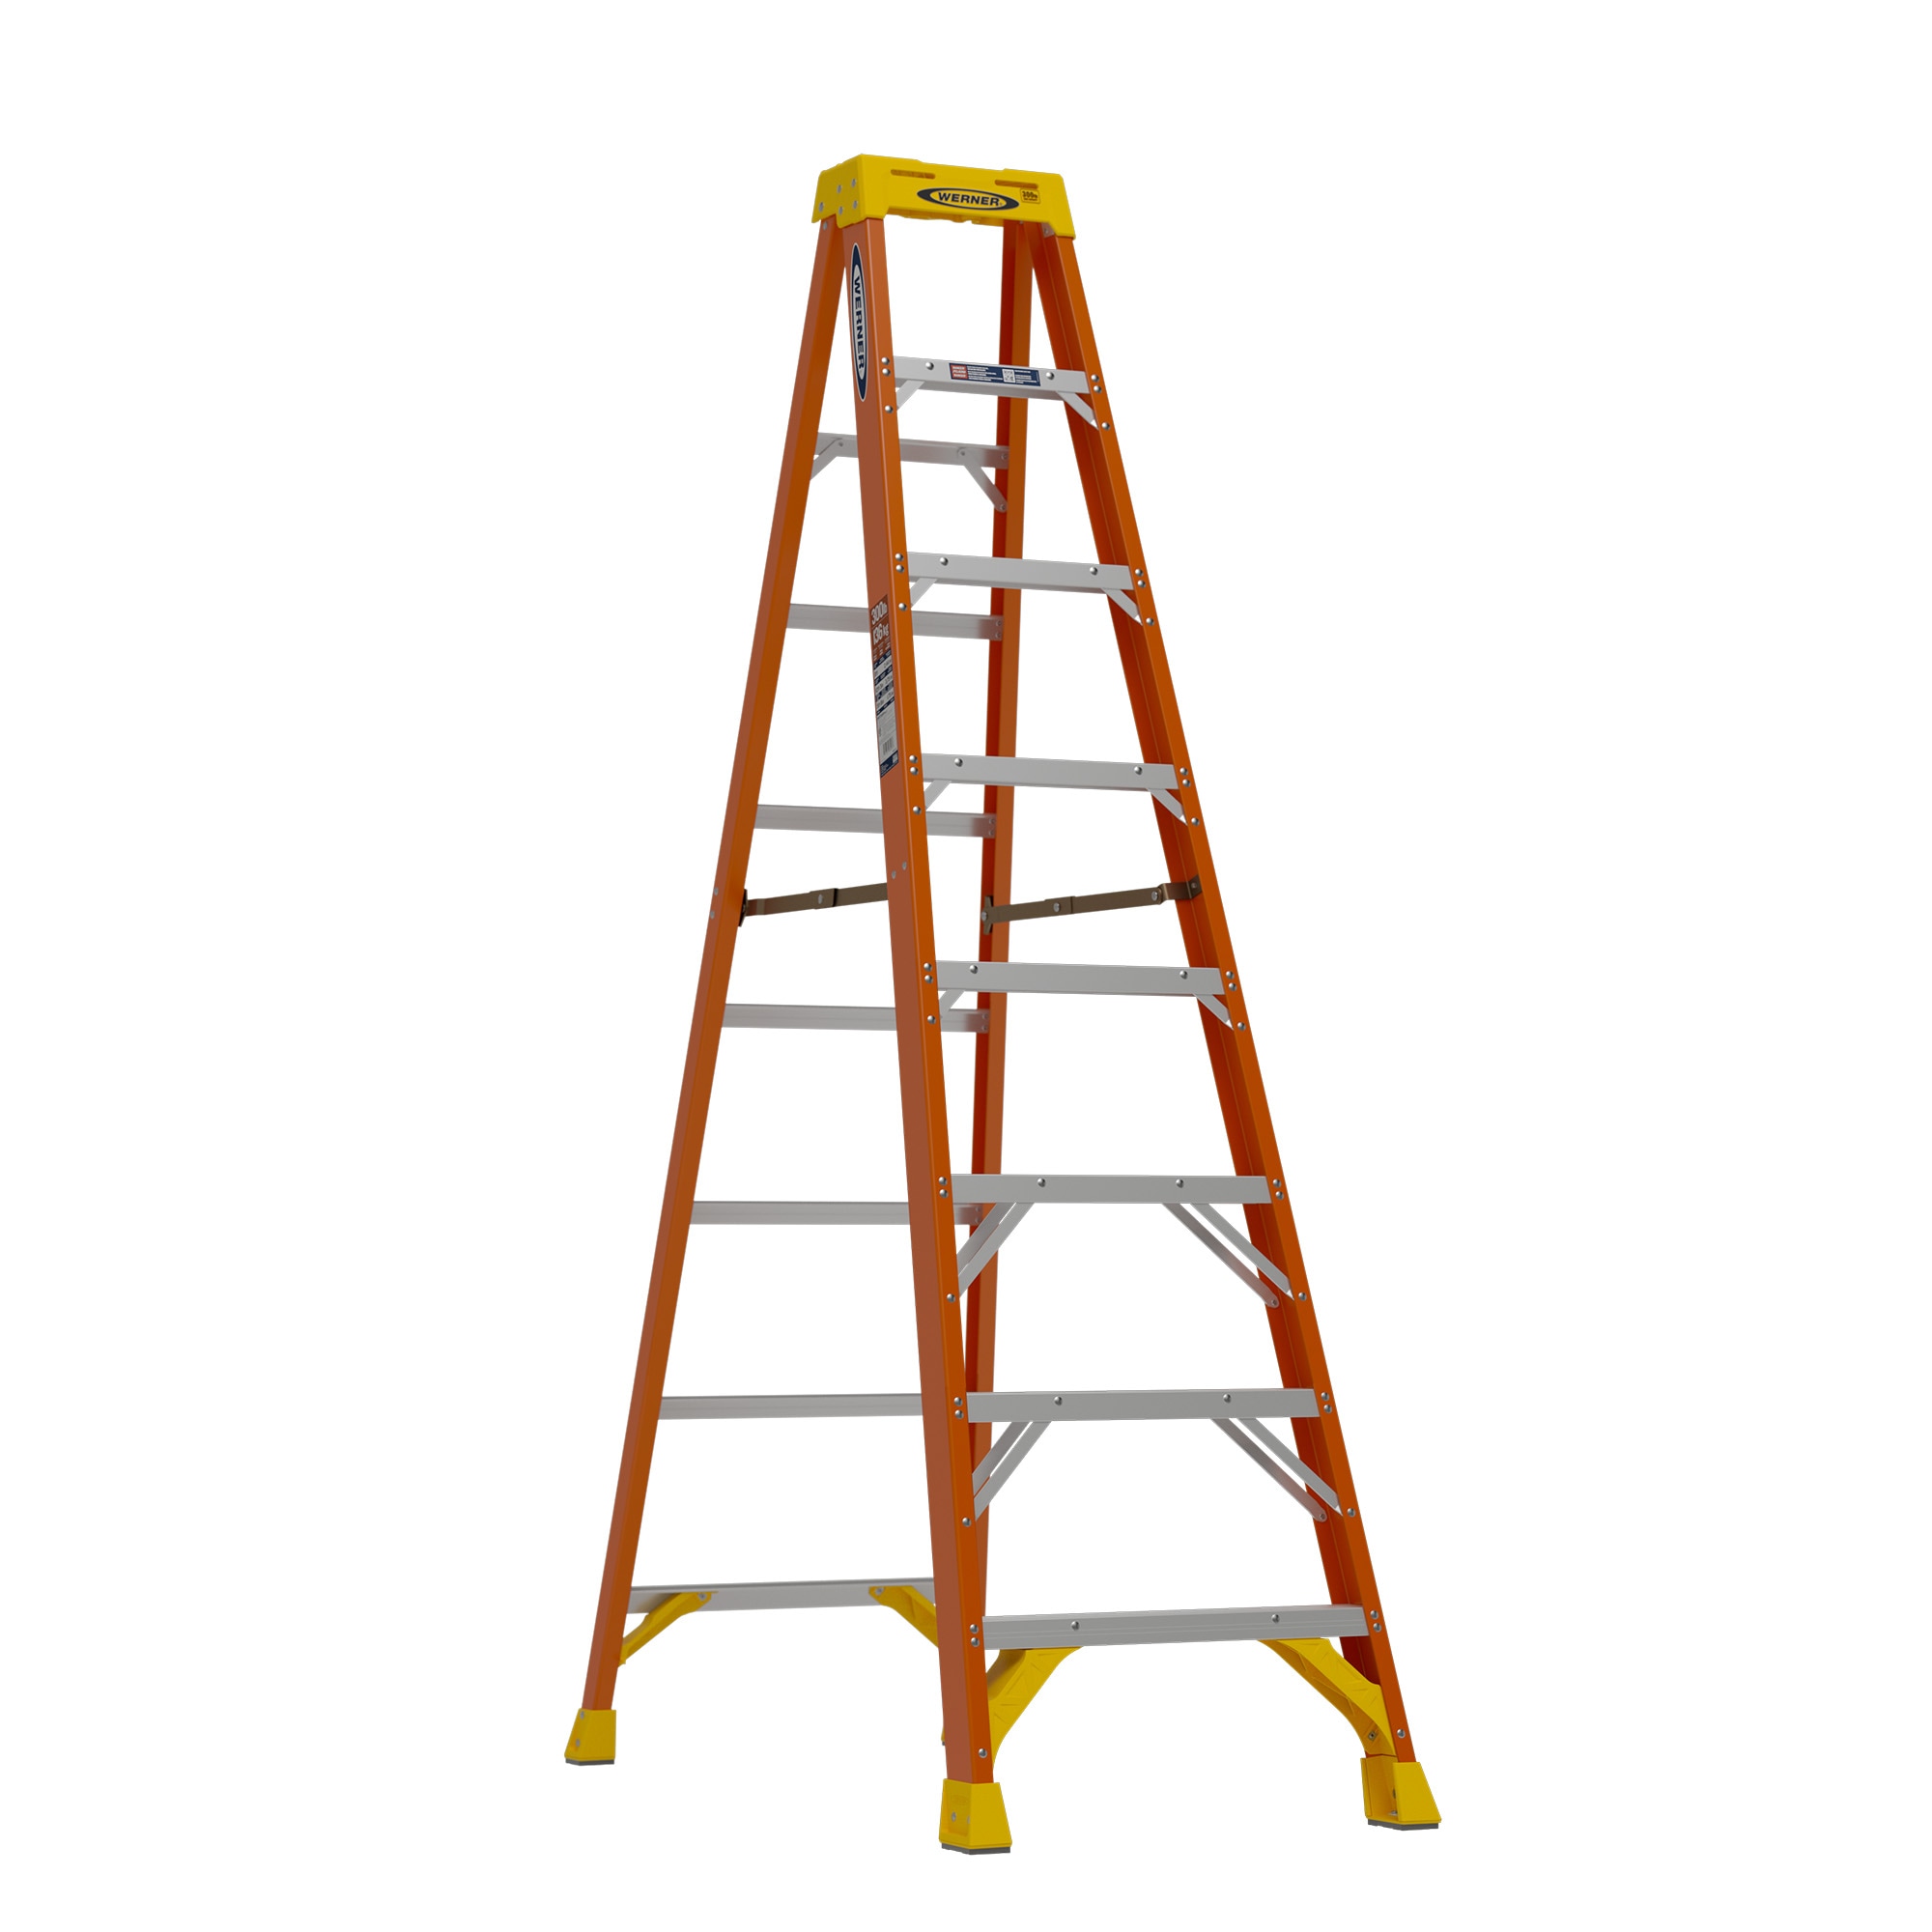 5 ft Deck Height Step Ladder